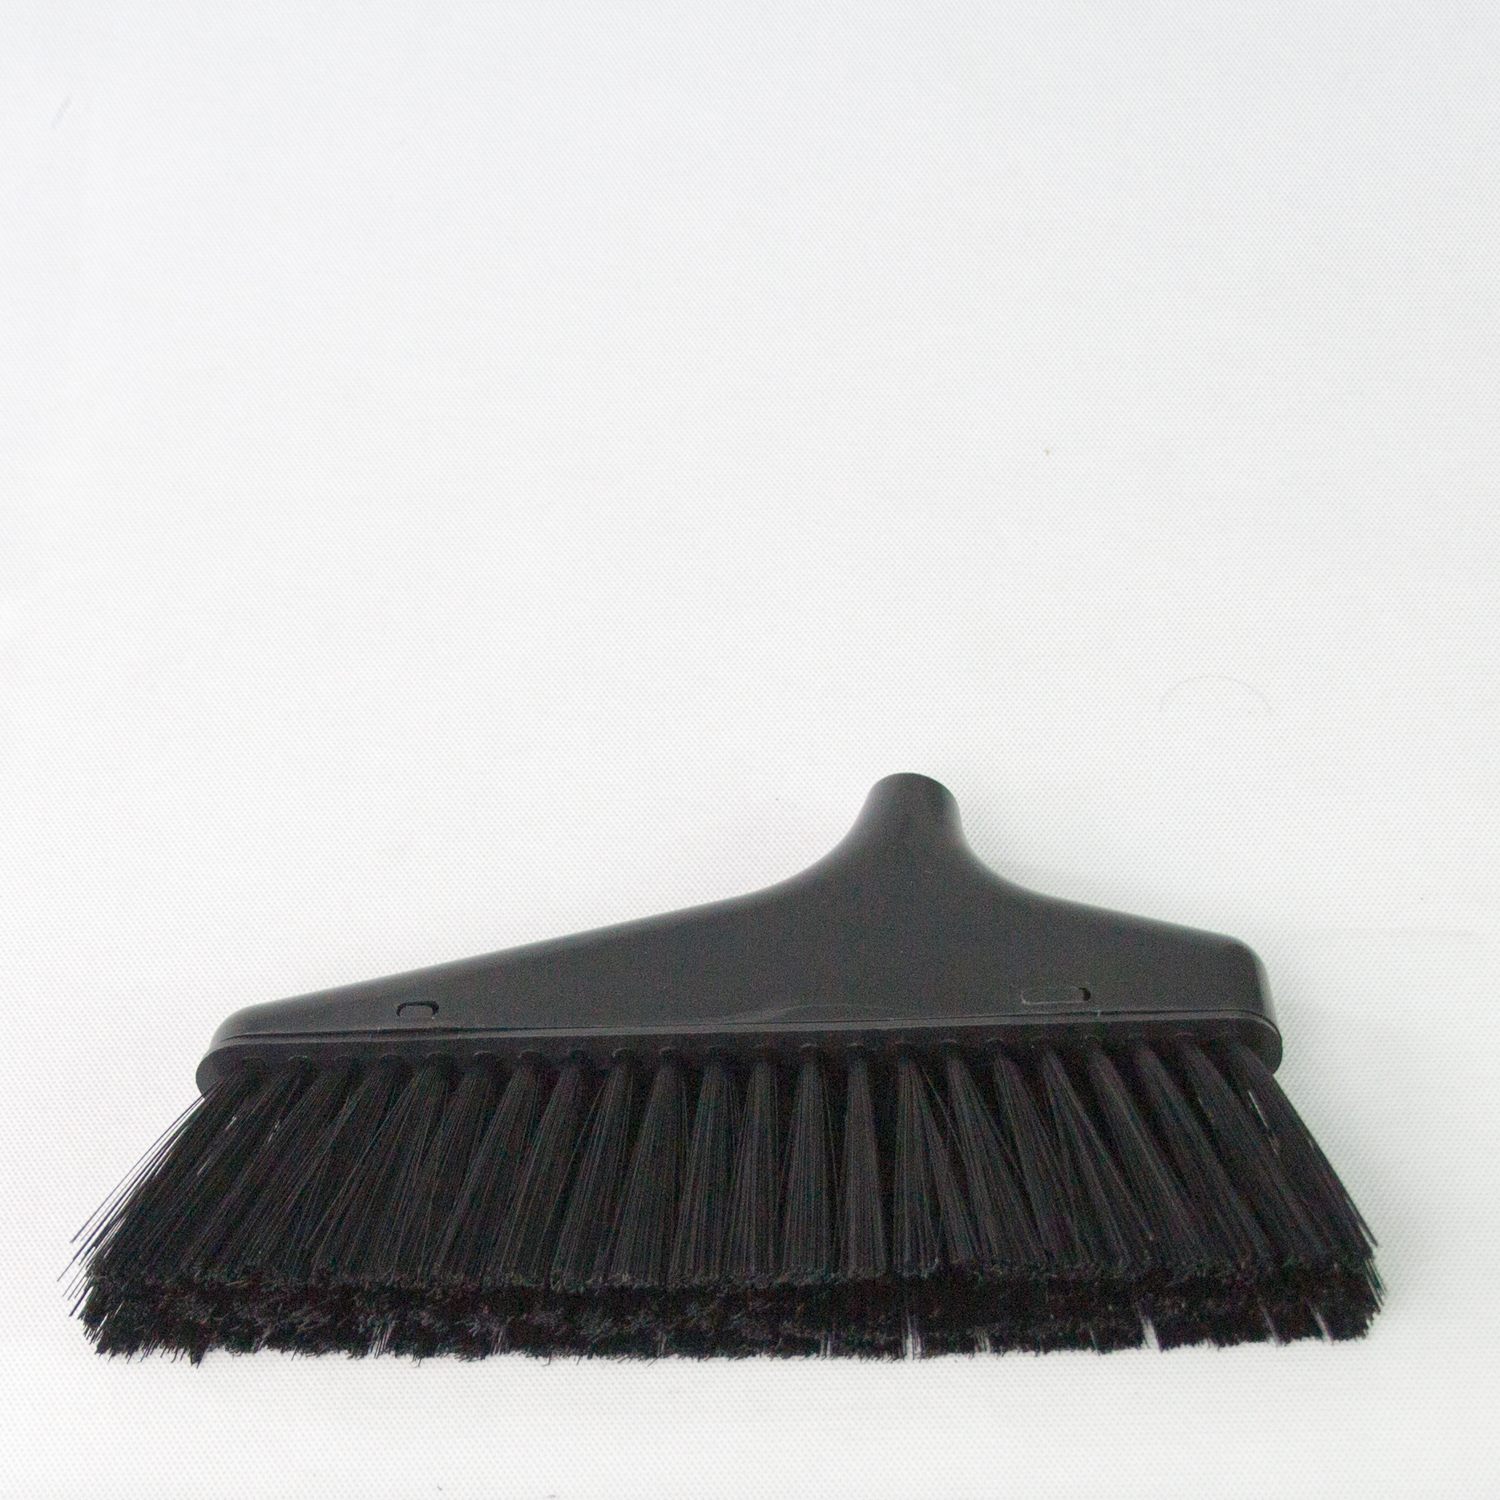 Chổi quét nhà cán dài rời bằng nhựa cao cấp, màu đen - Hàng nội địa Nhật Bản